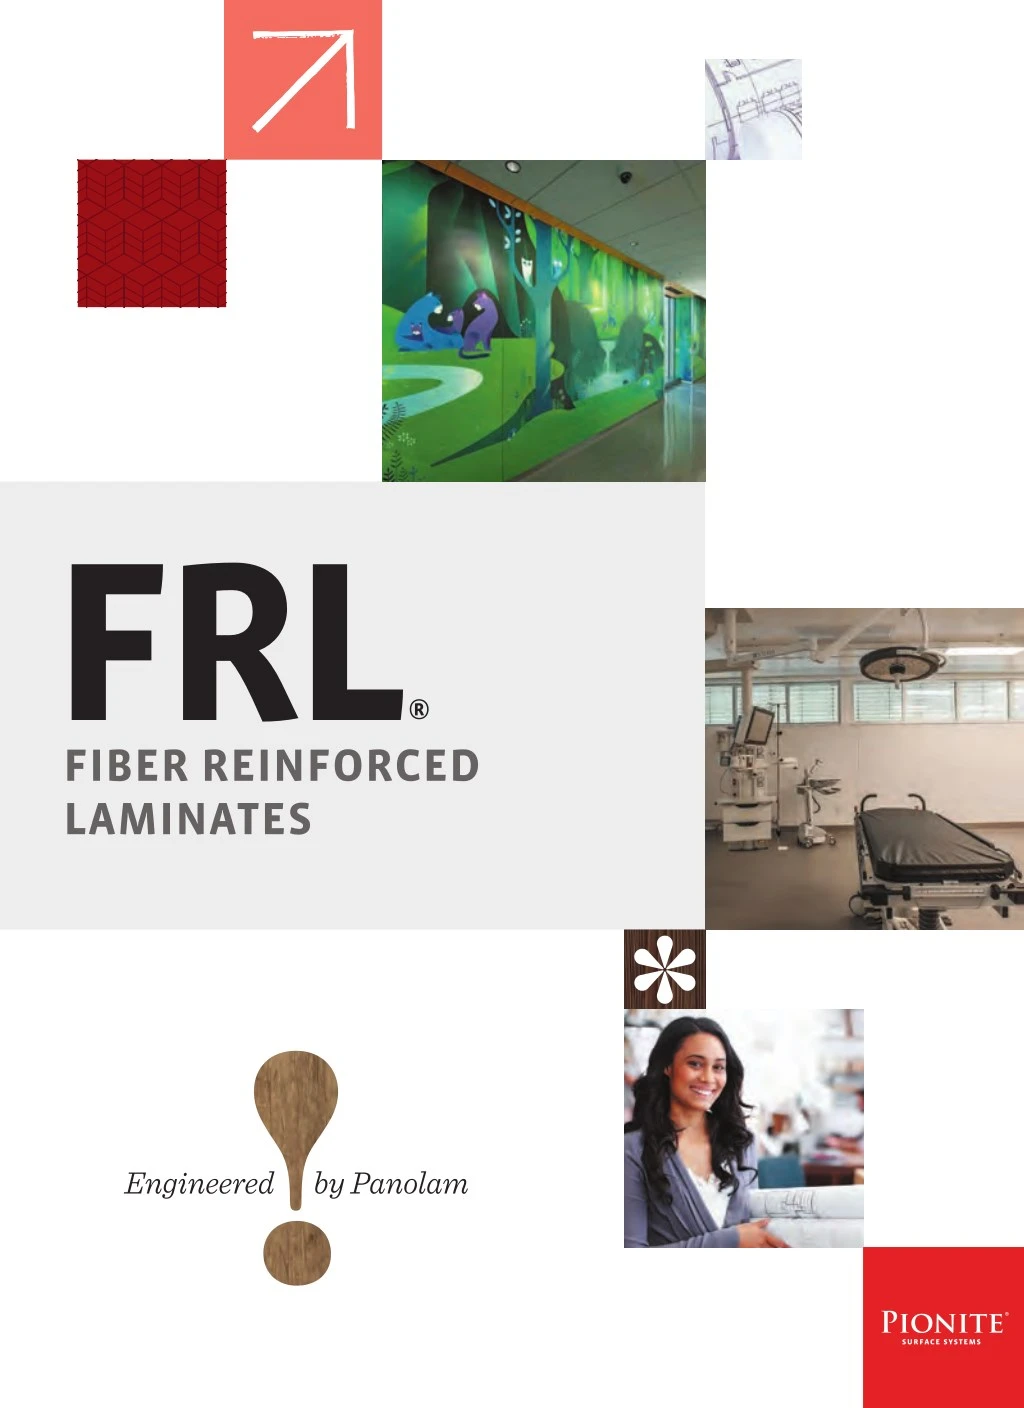 frl fiber reinforced laminates